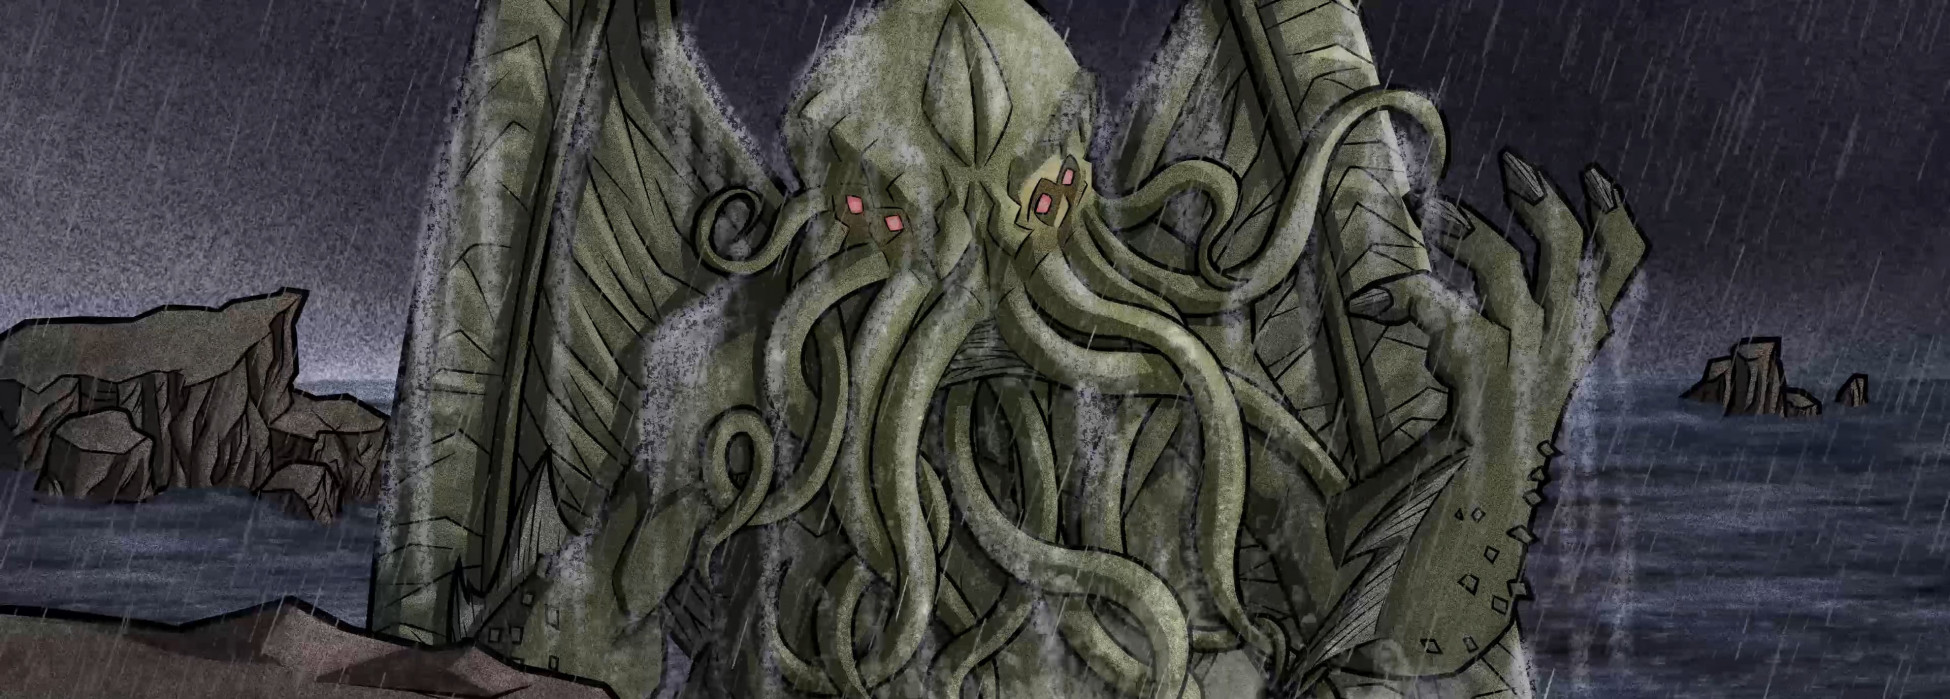 El Arte de Lovecraft